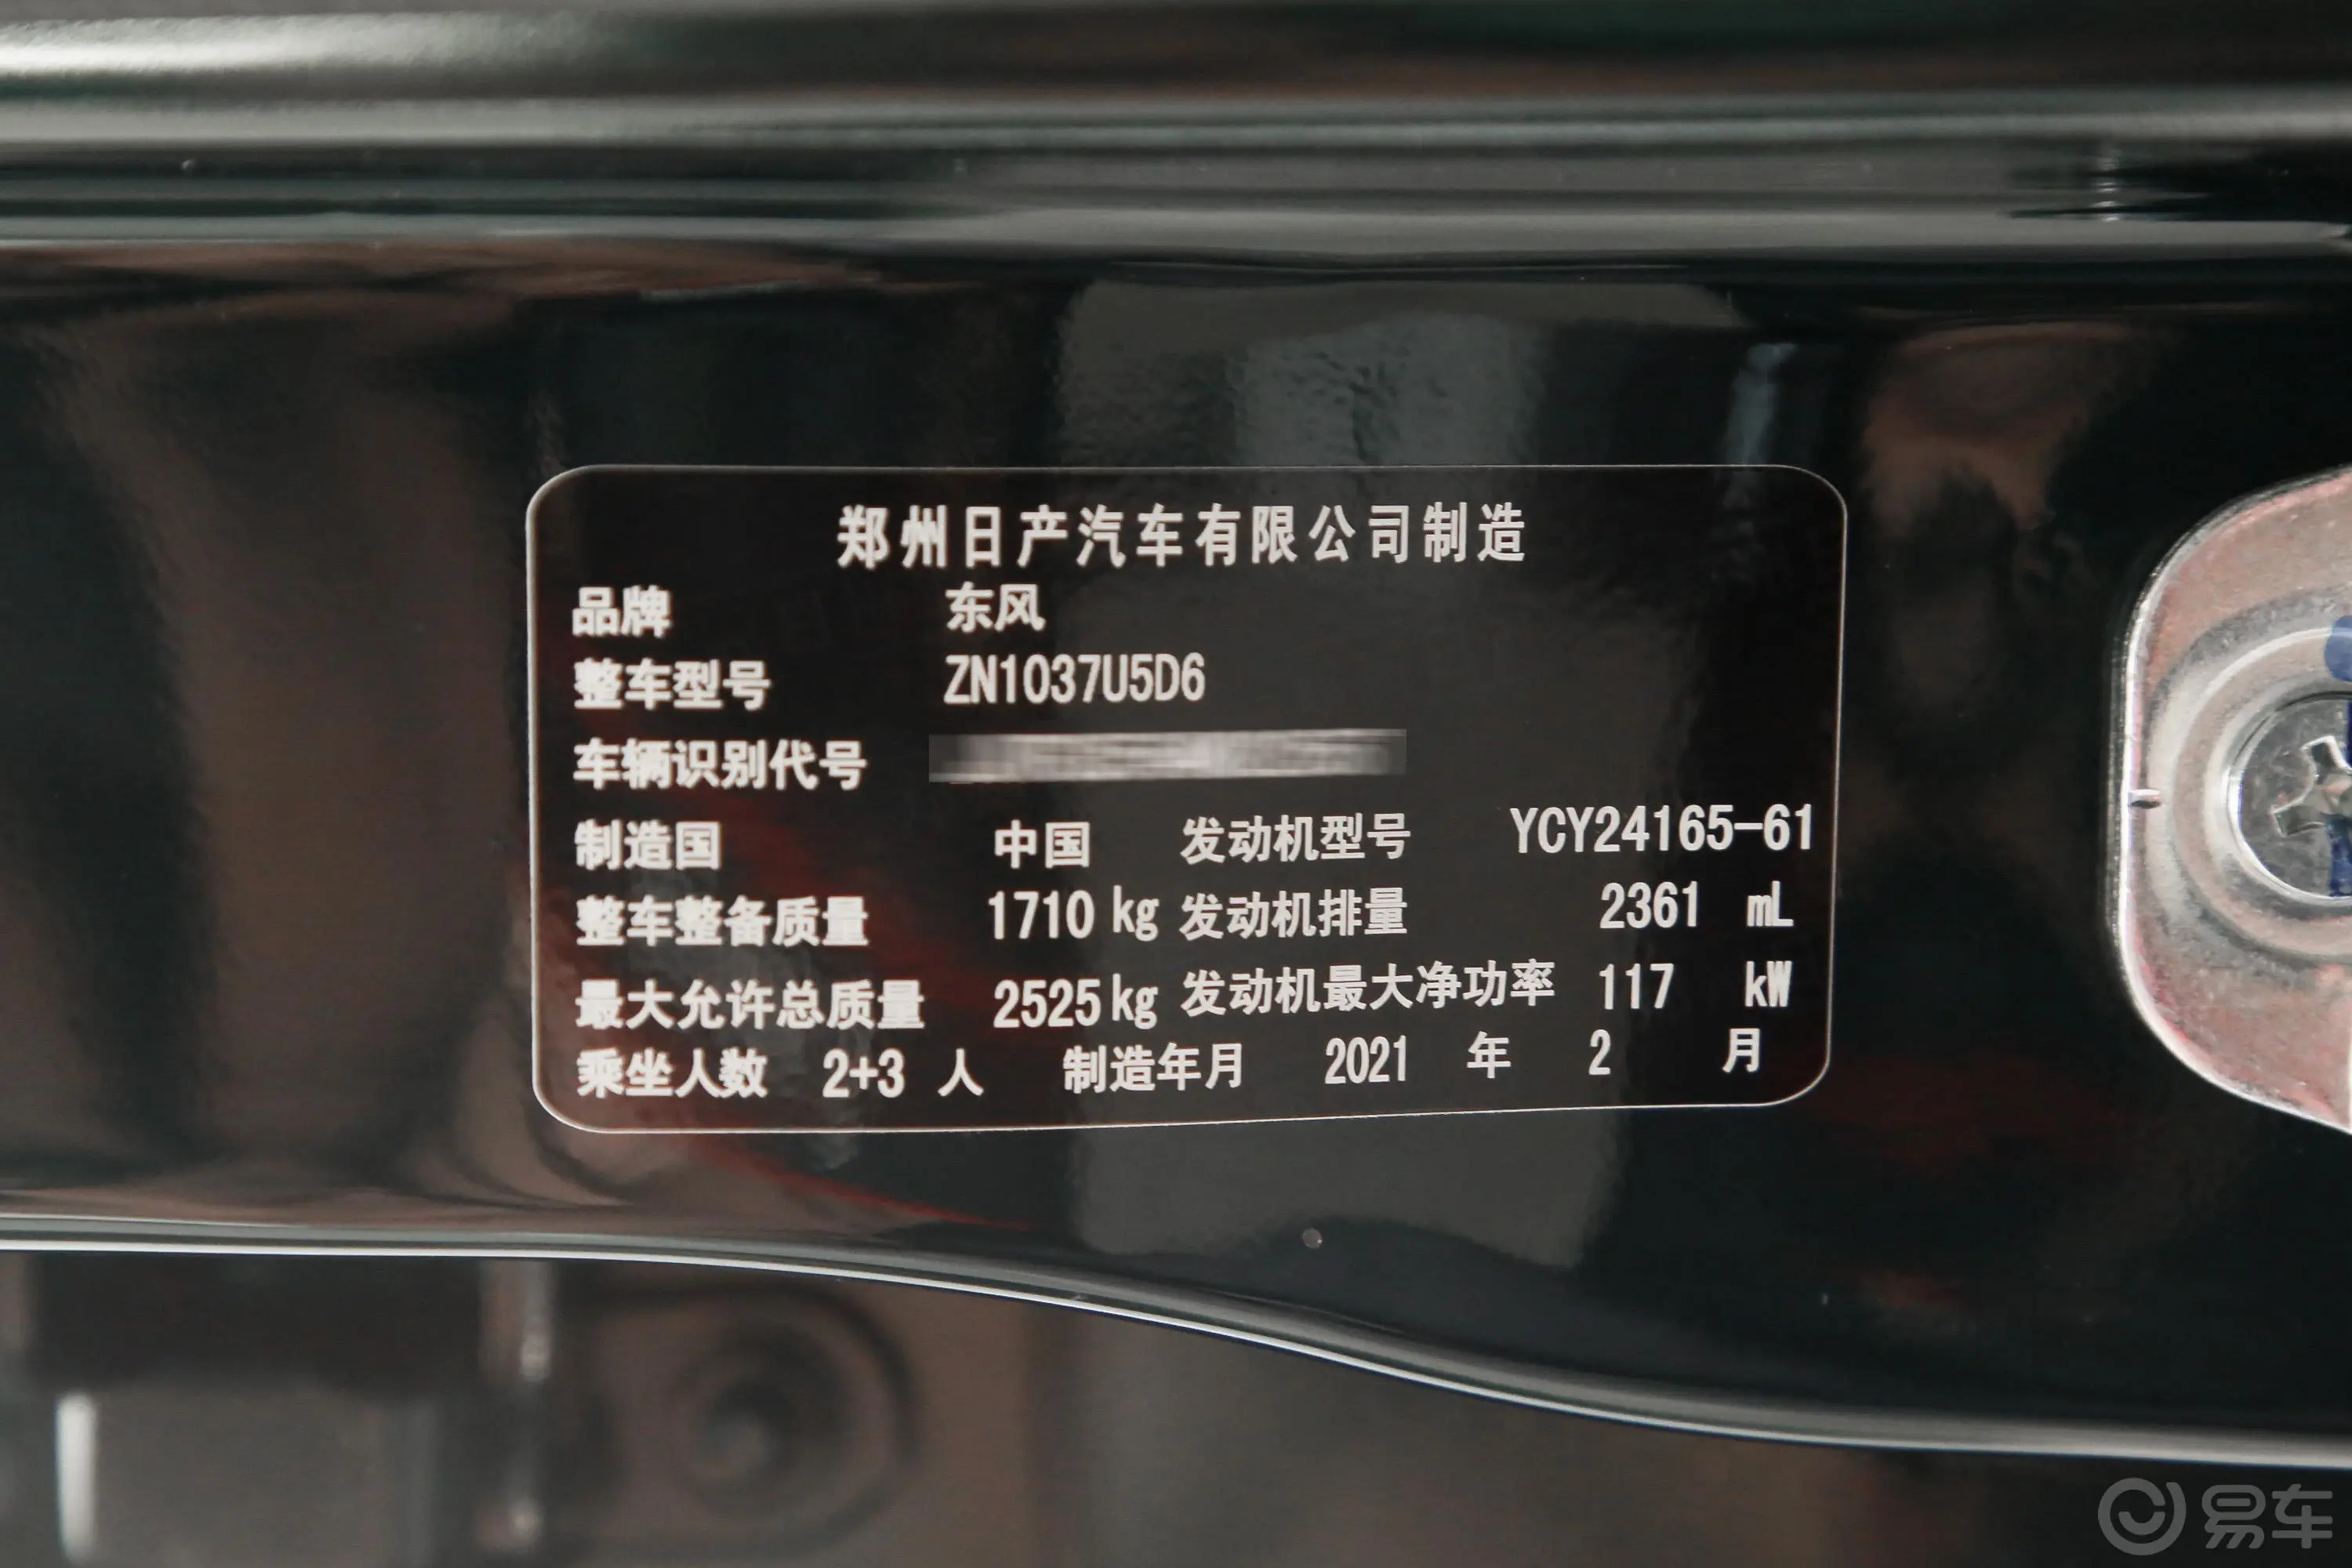 锐骐2.4T 两驱基型车小康版YCY24165-61 柴油车辆信息铭牌